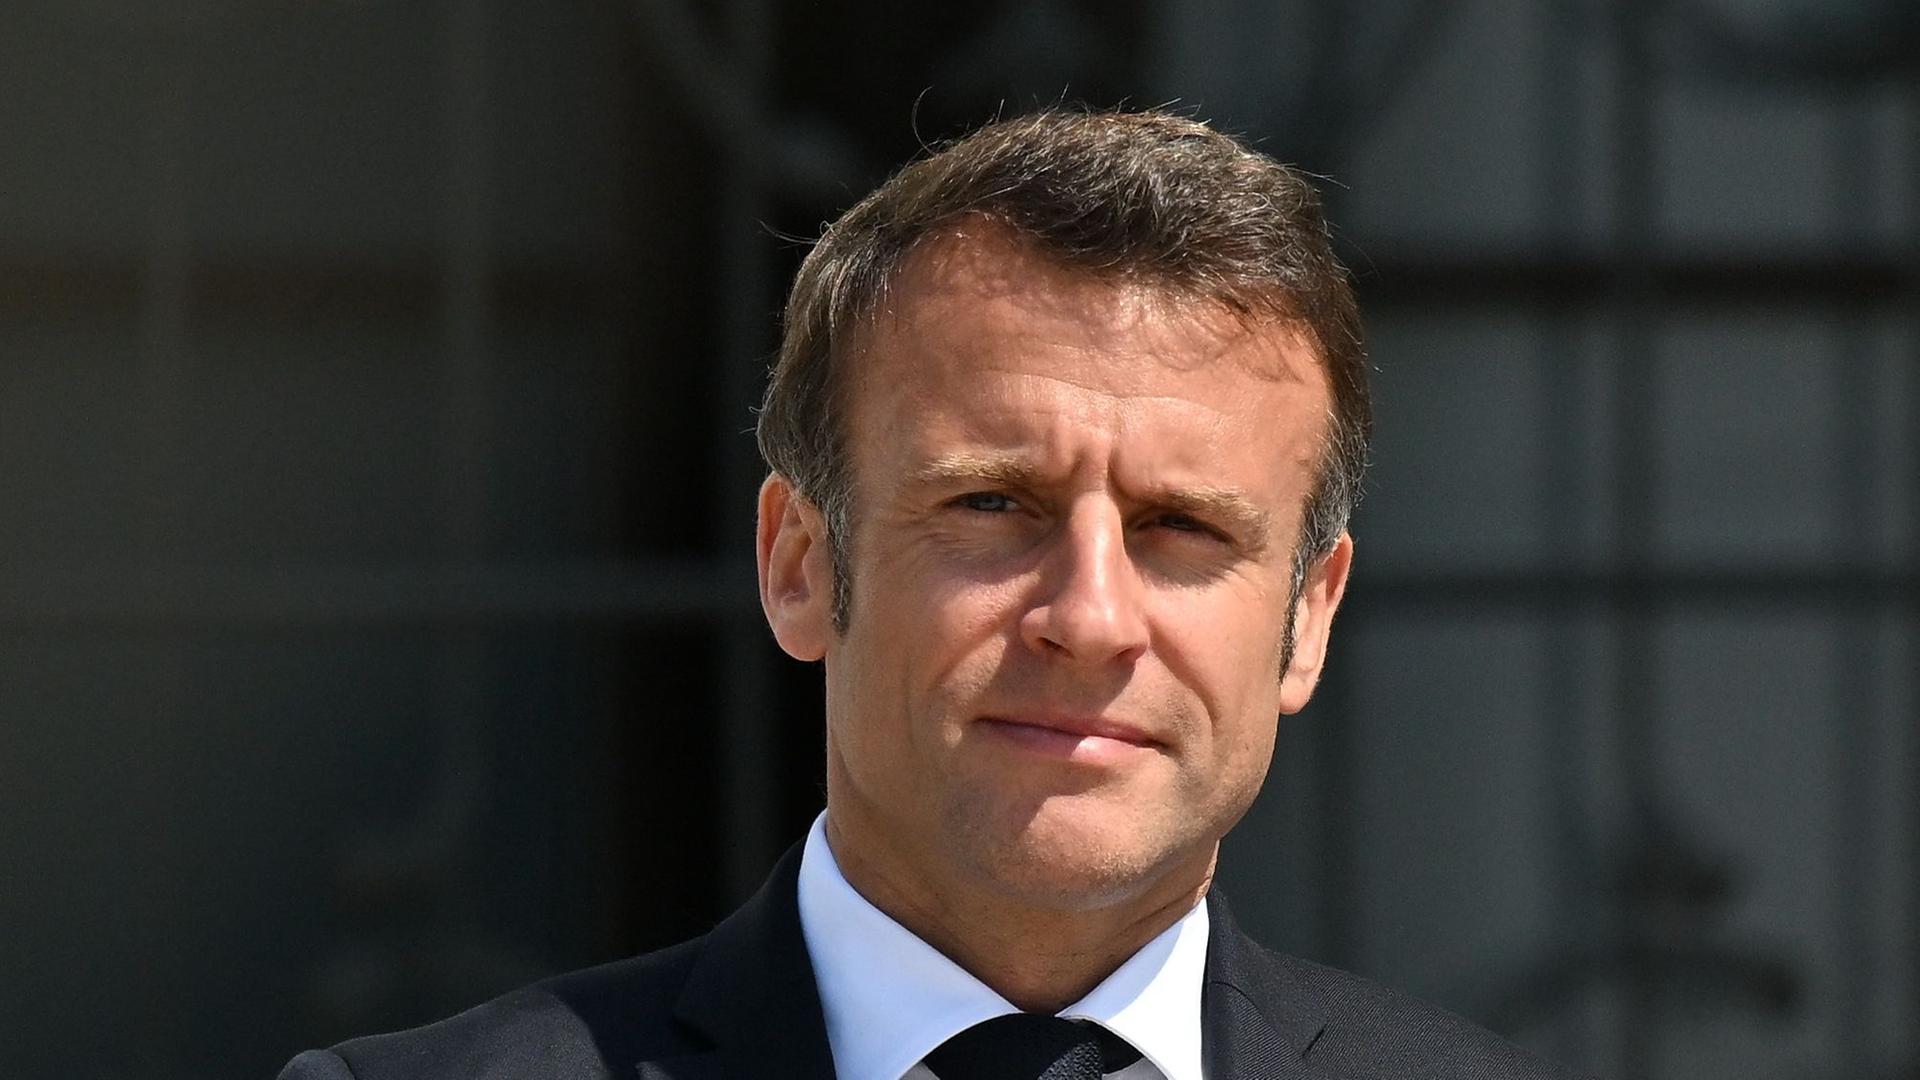 Macron in einer Portraitaufnahme im Anzug. Ihm scheint die Sonne ins Gesicht.